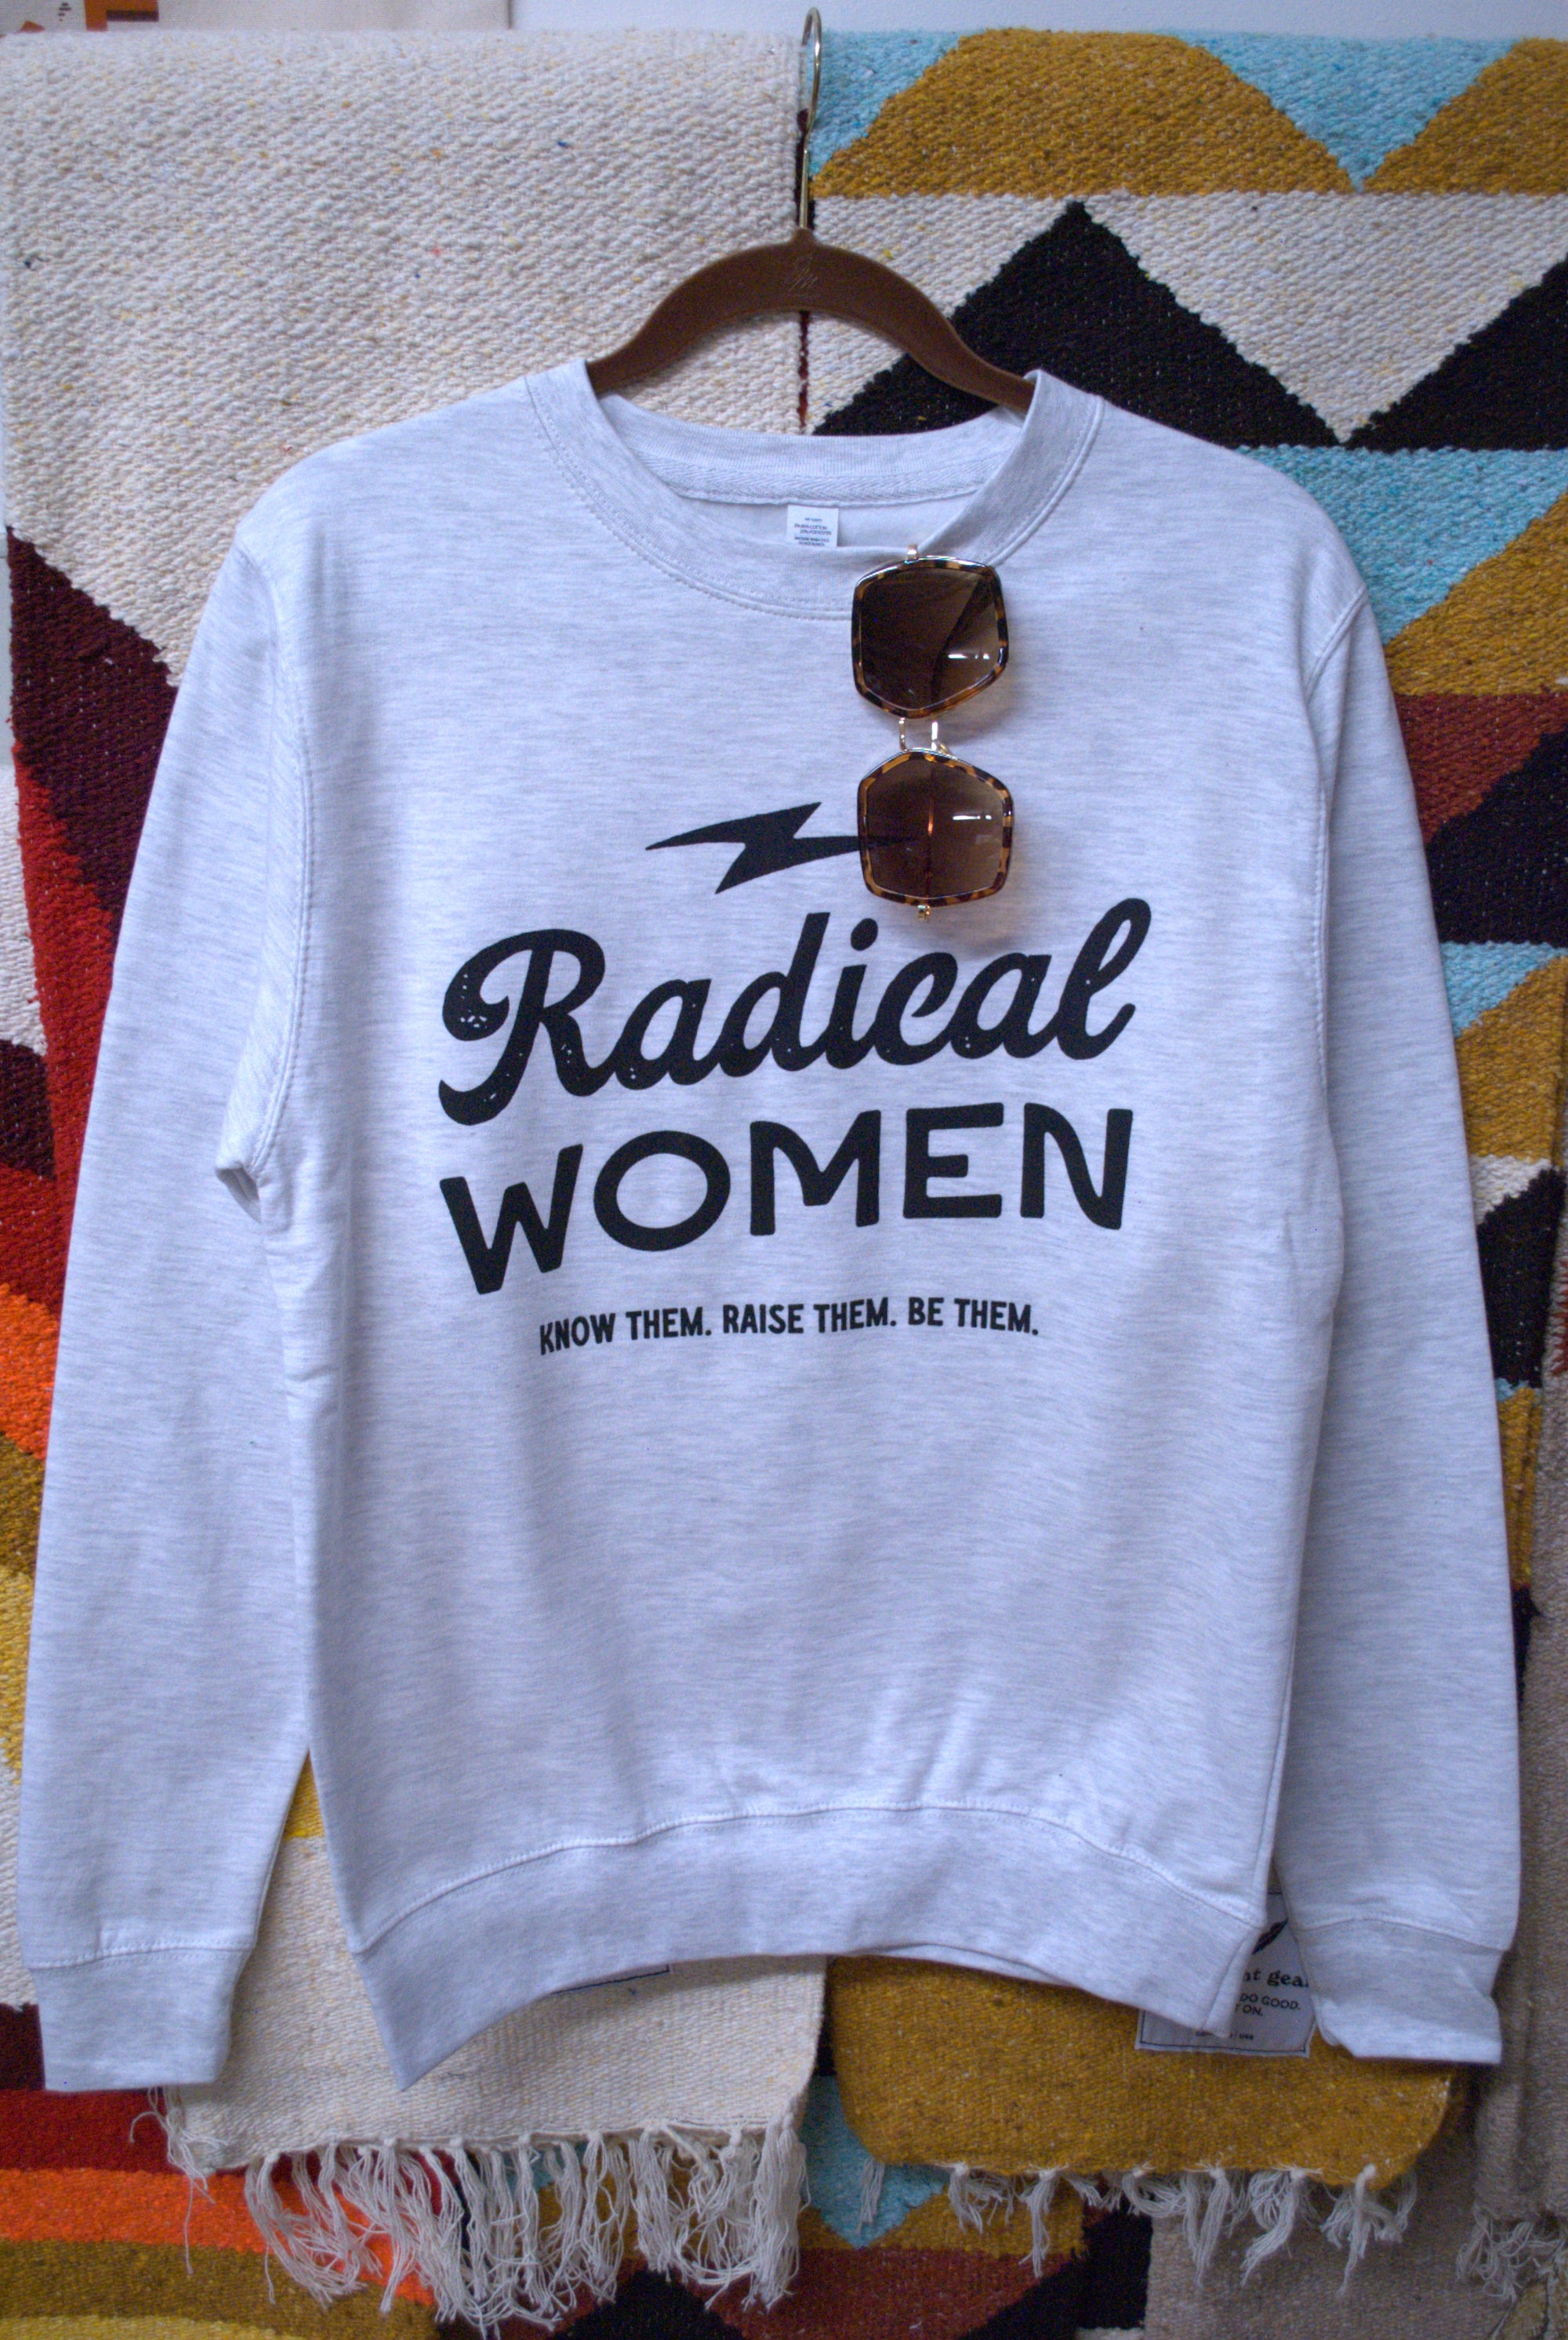 Radical Women